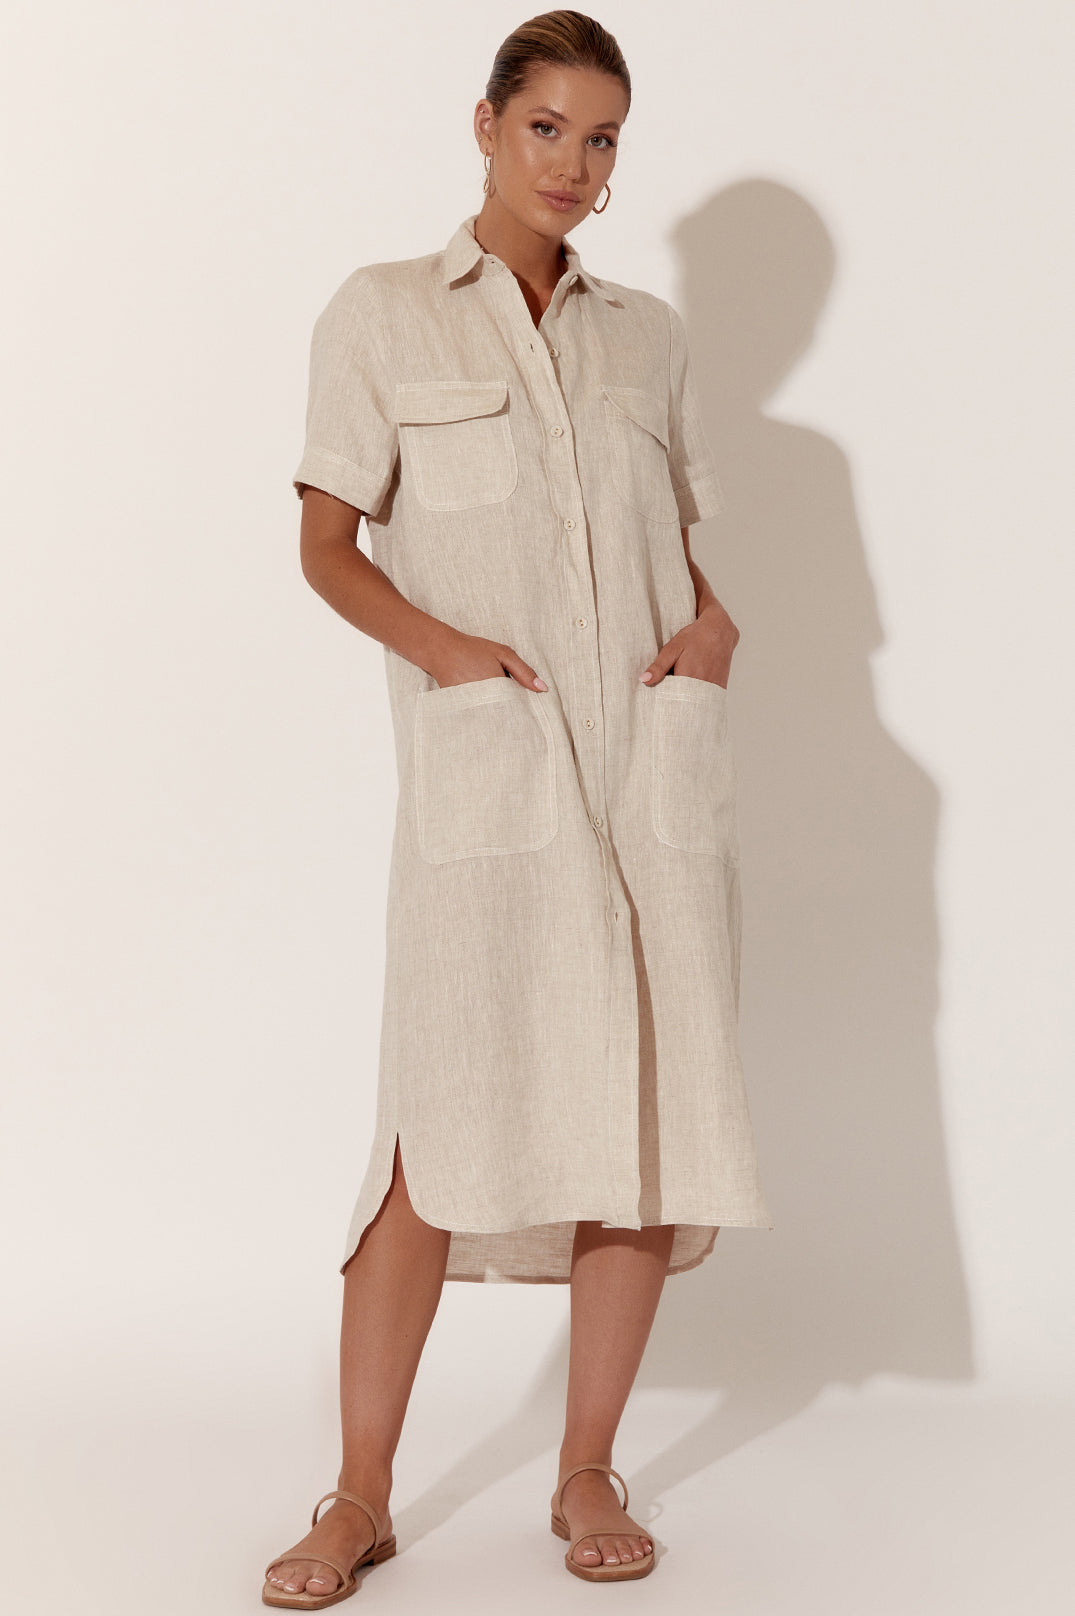 Adorne Petrina Short Sleeve Linen Dress - Natural